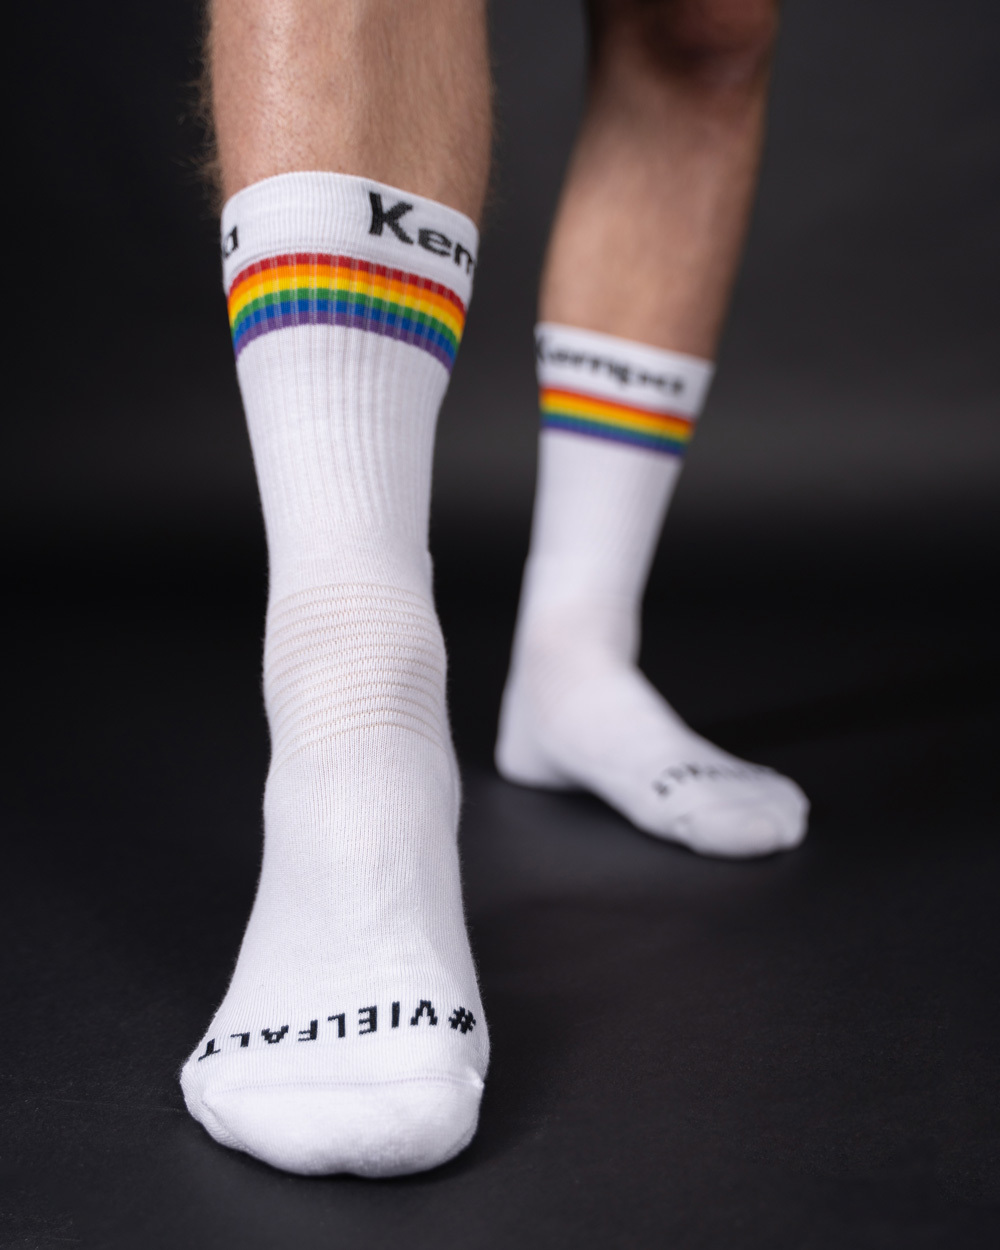 Kempa Socken weiß aus der Rainbow Sonderkollektion